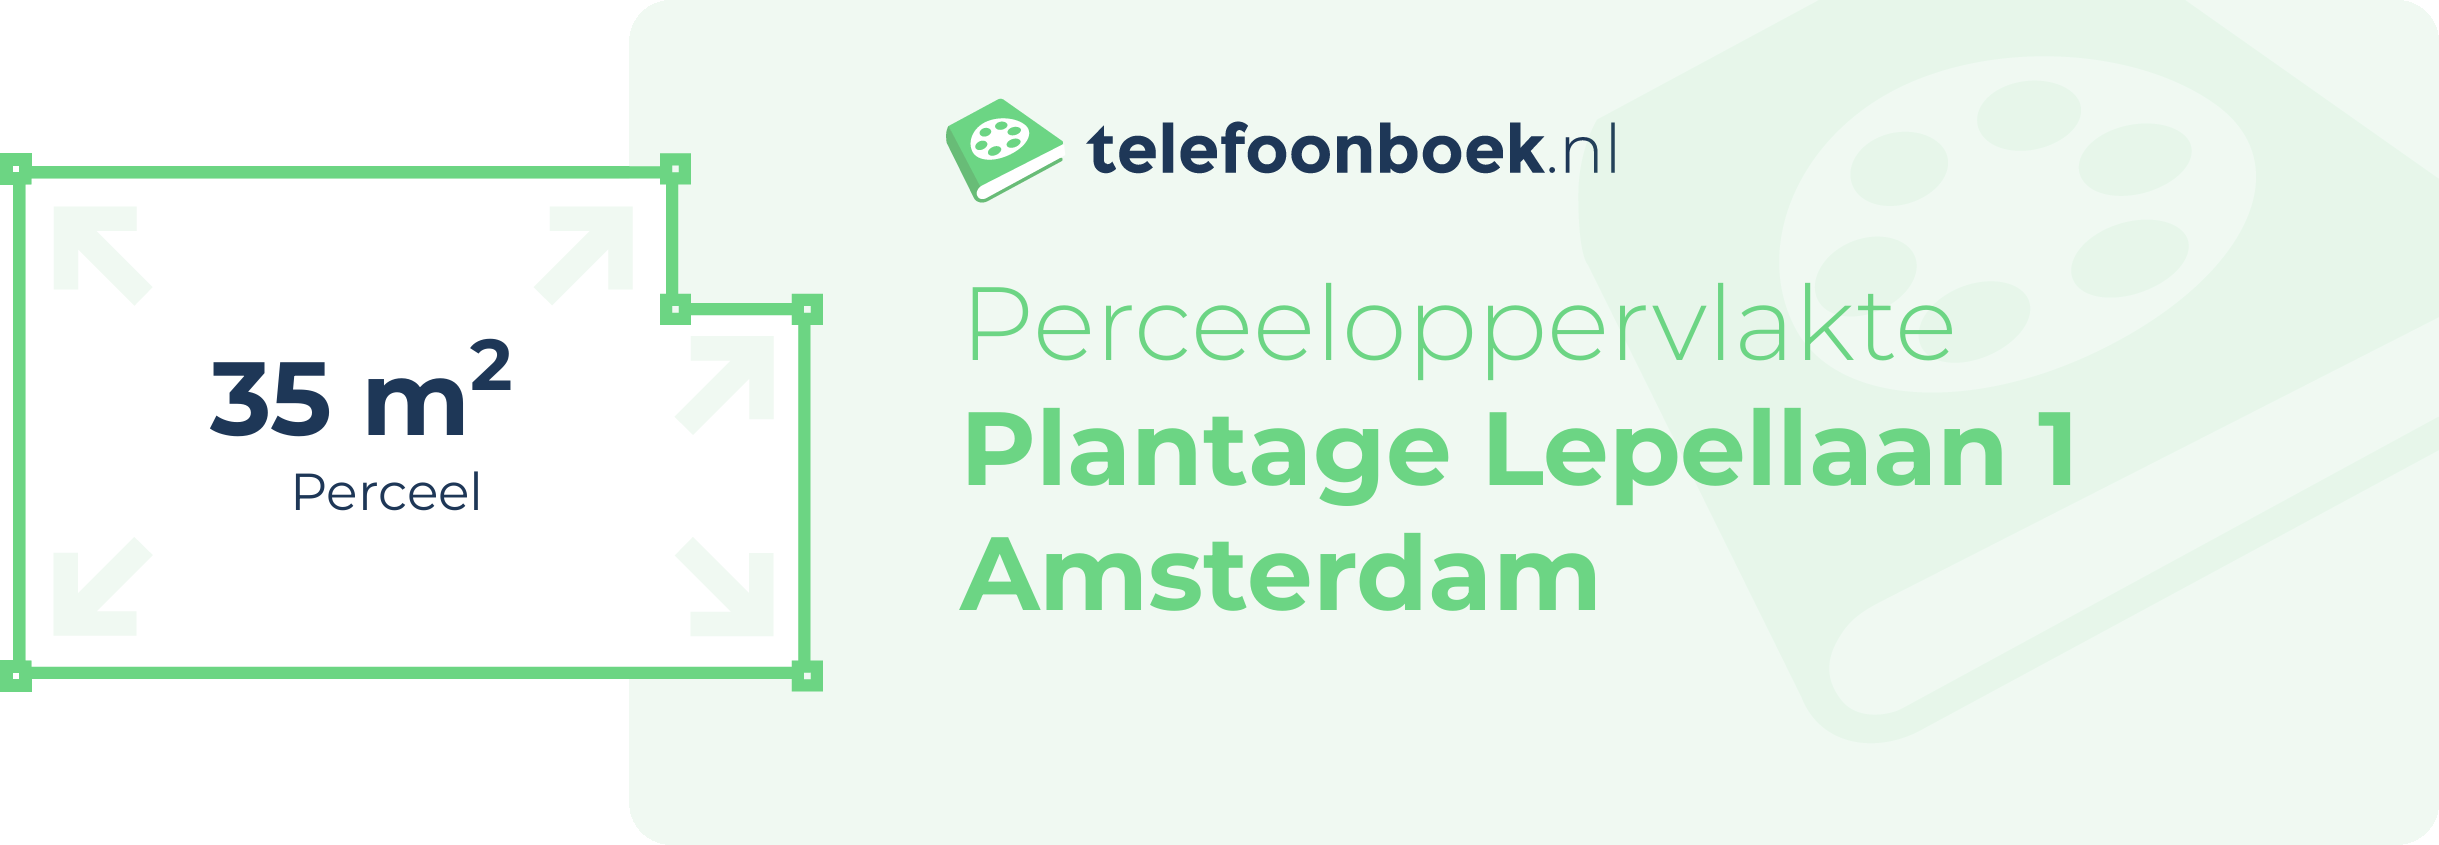 Perceeloppervlakte Plantage Lepellaan 1 Amsterdam